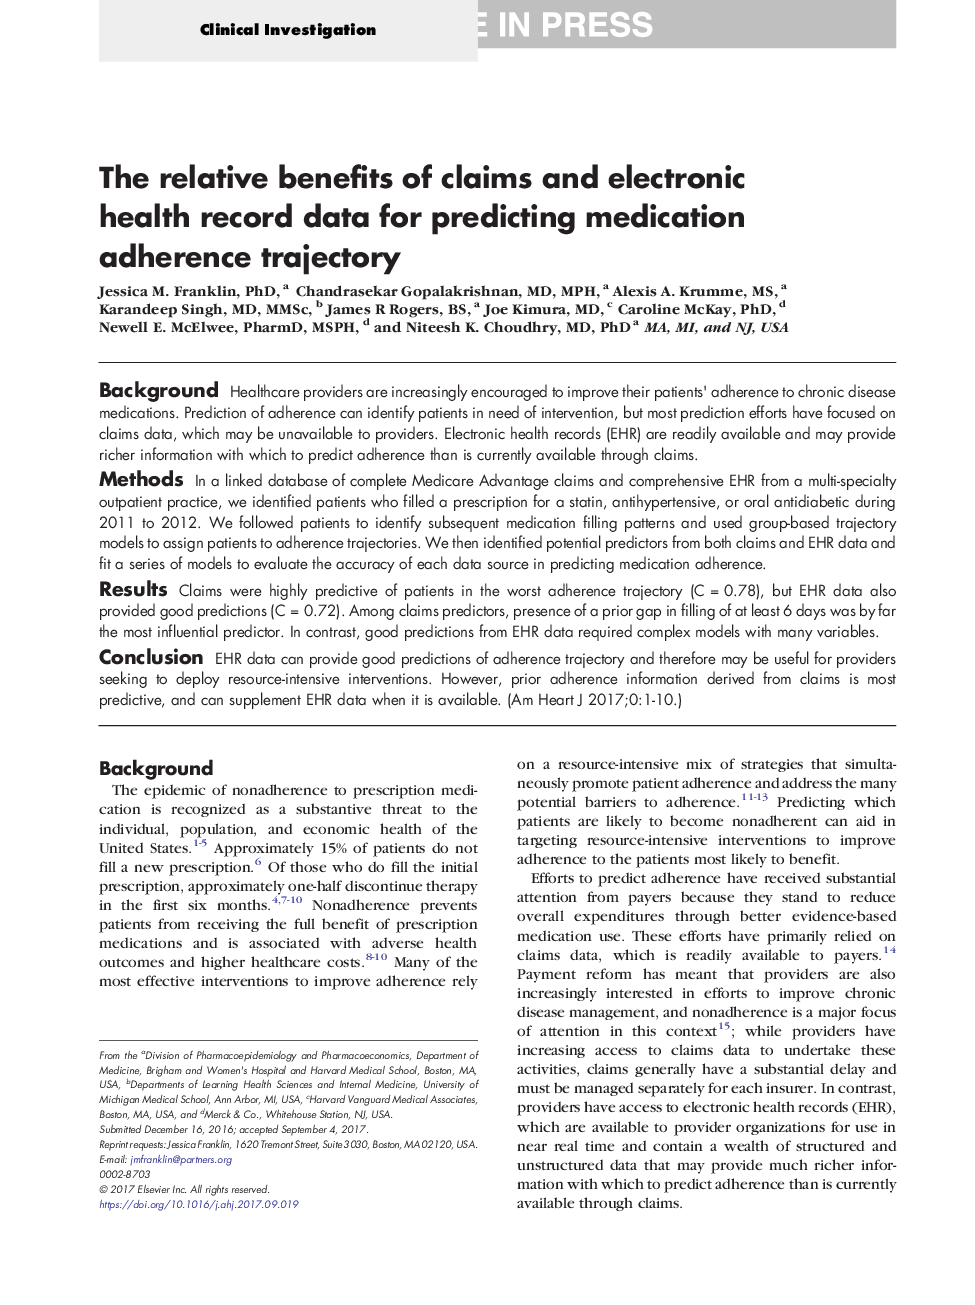 مزایای نسبی ادعاهای و داده های ثبت الکترونیکی سلامت برای پیش بینی مسیر پیروی از دارو 